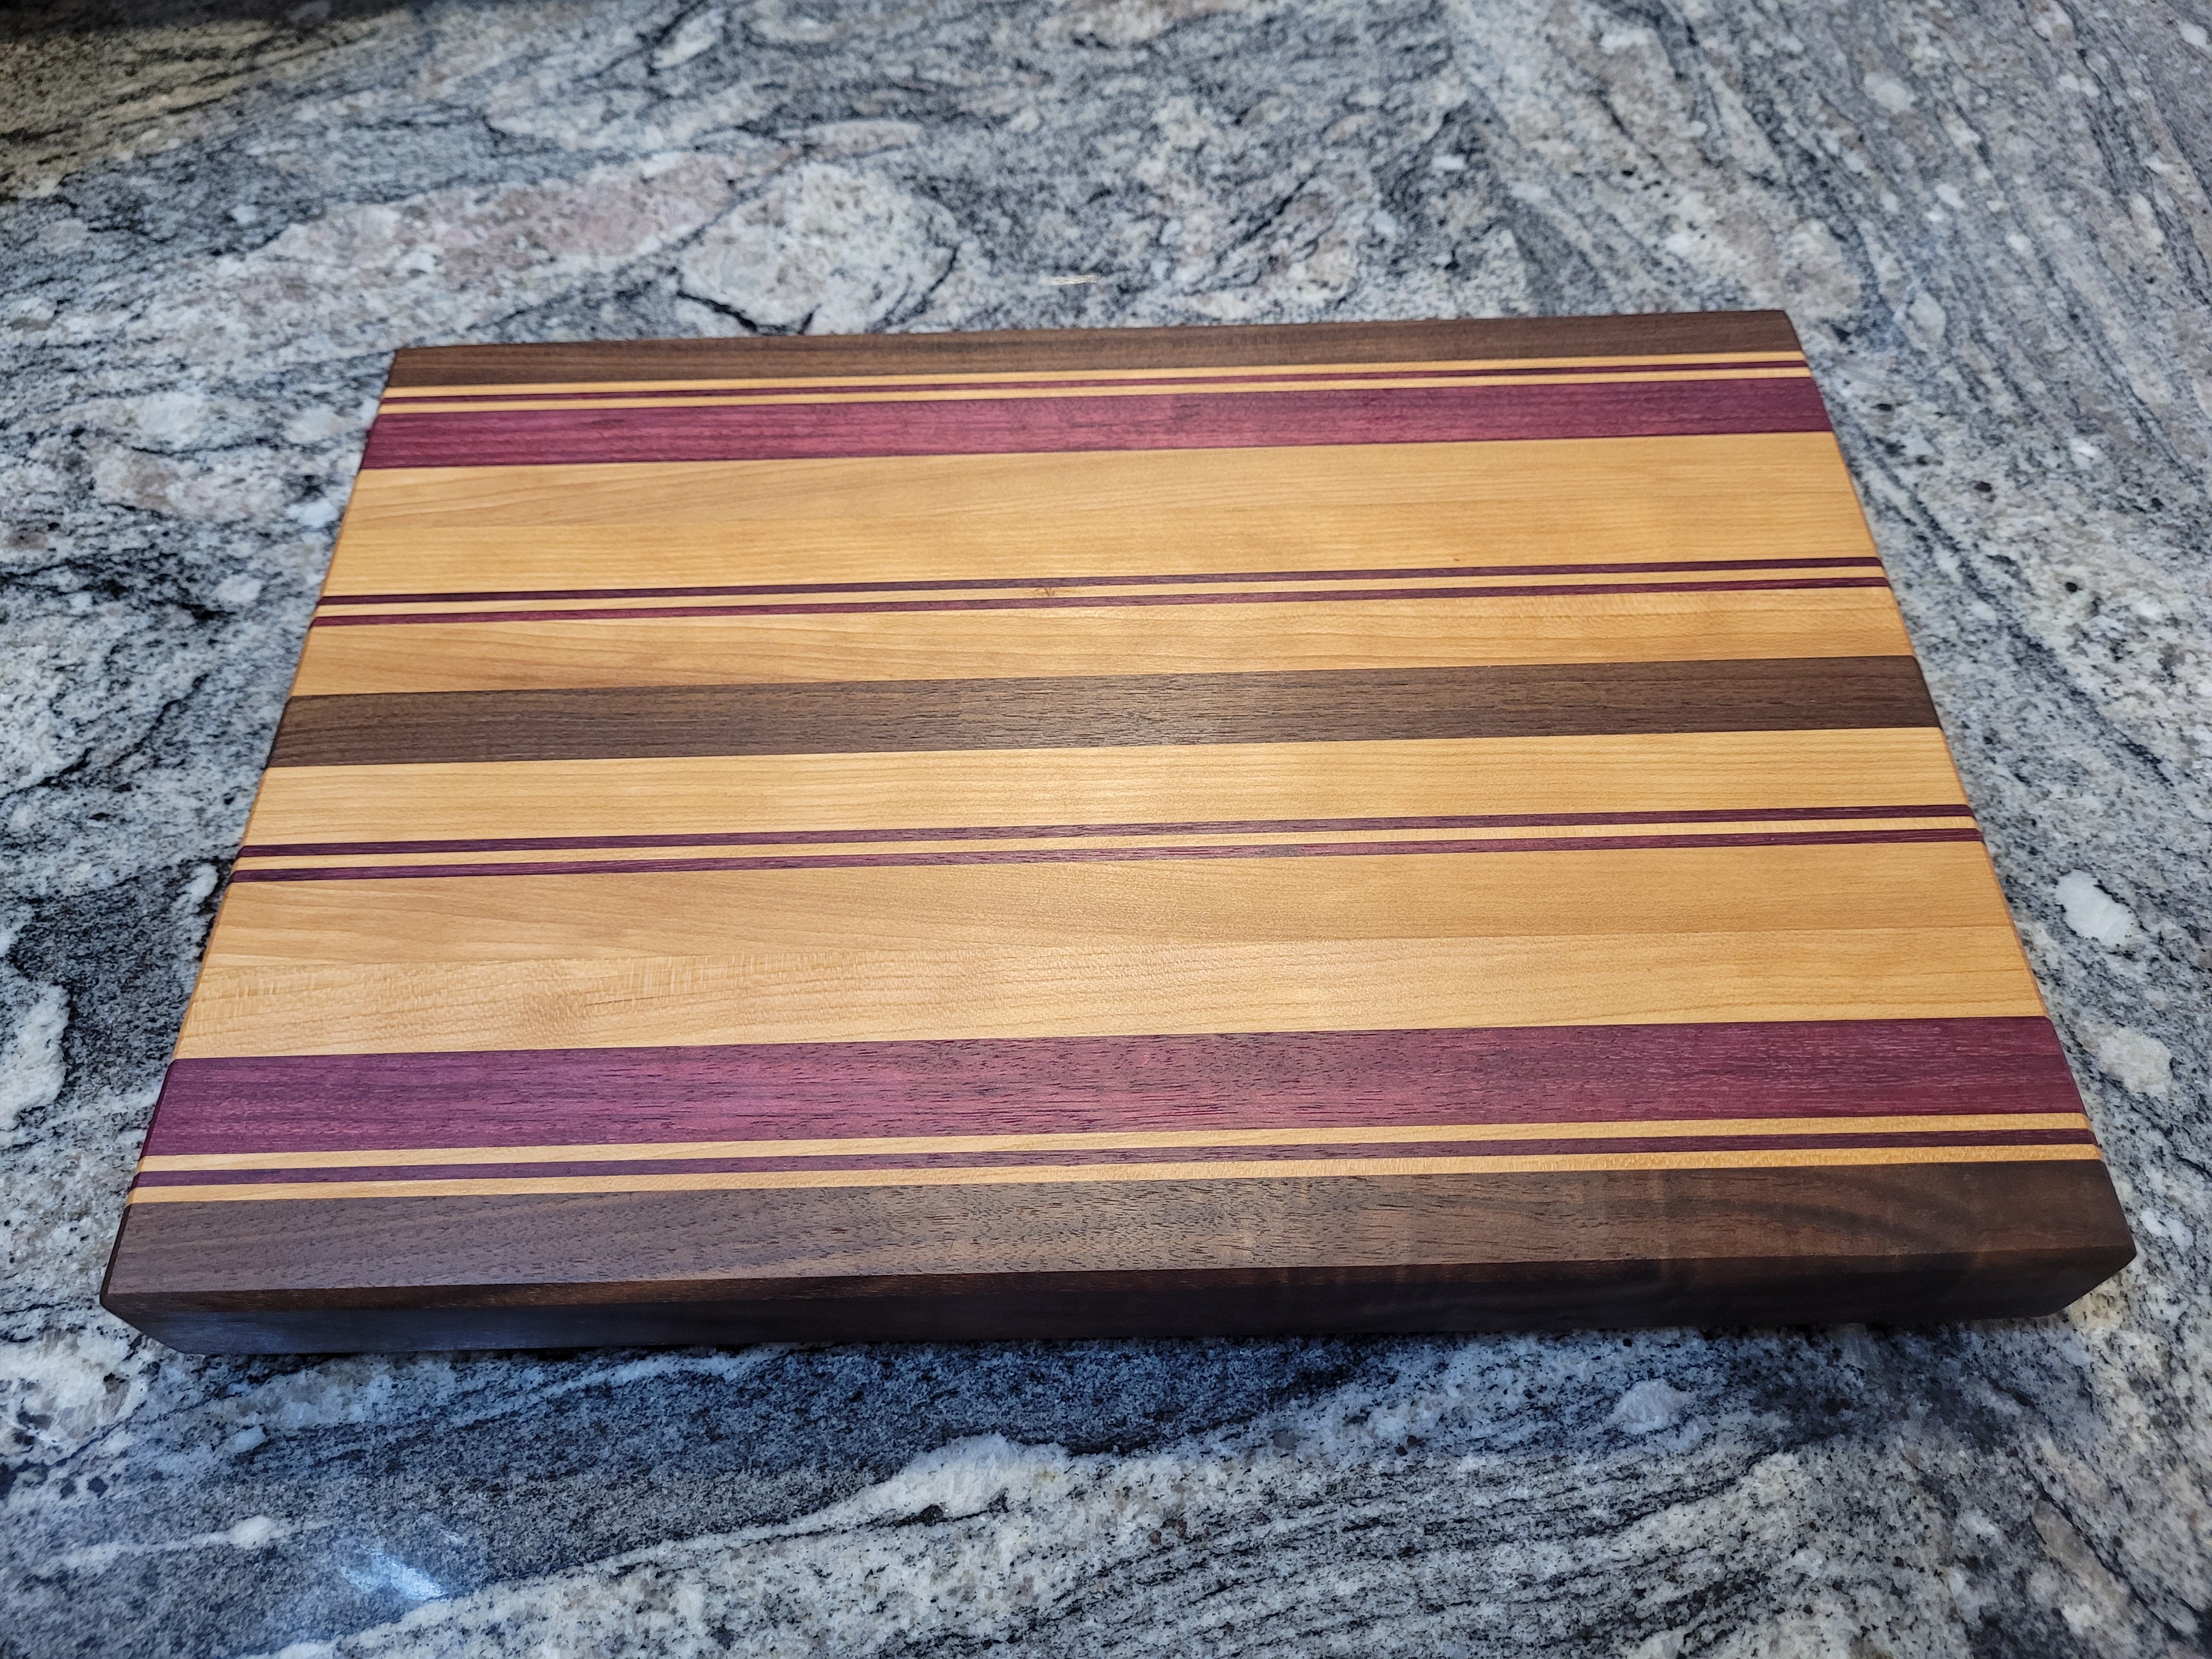 Medium cutting board 5